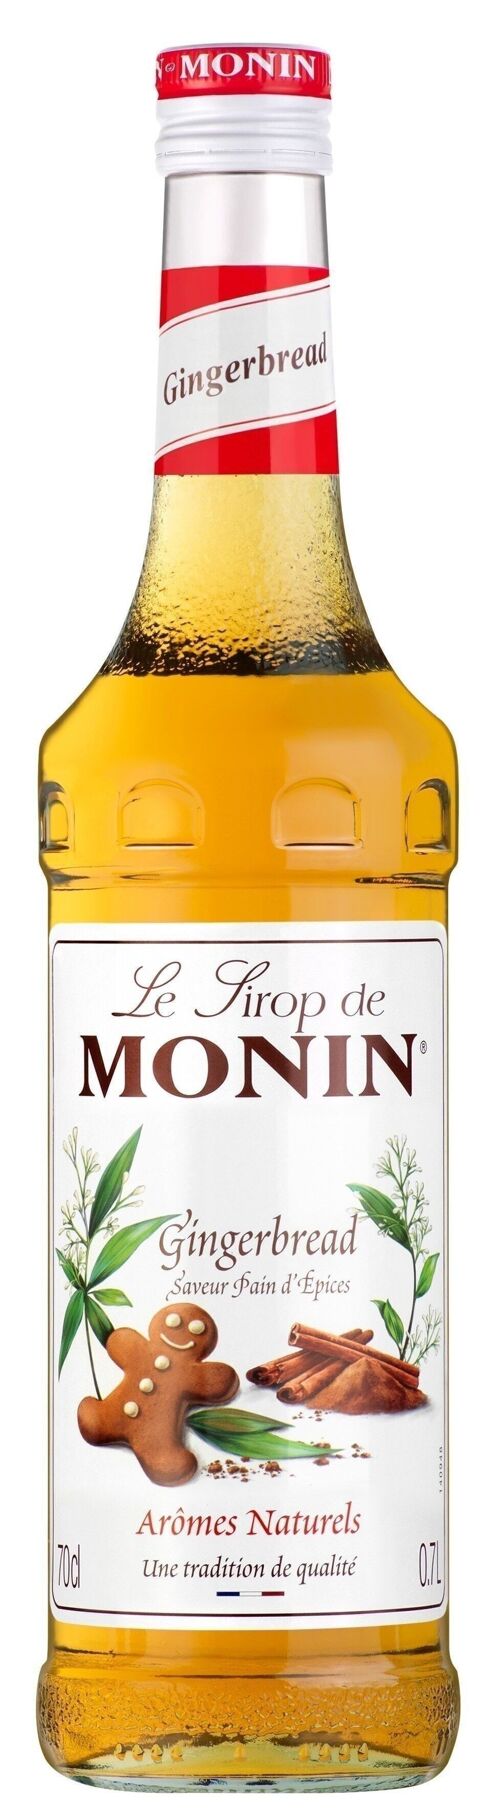 Sirop Saveur Pain d'épices MONIN pour aromatiser vos boissons chaudes - Arômes naturels - 70cl